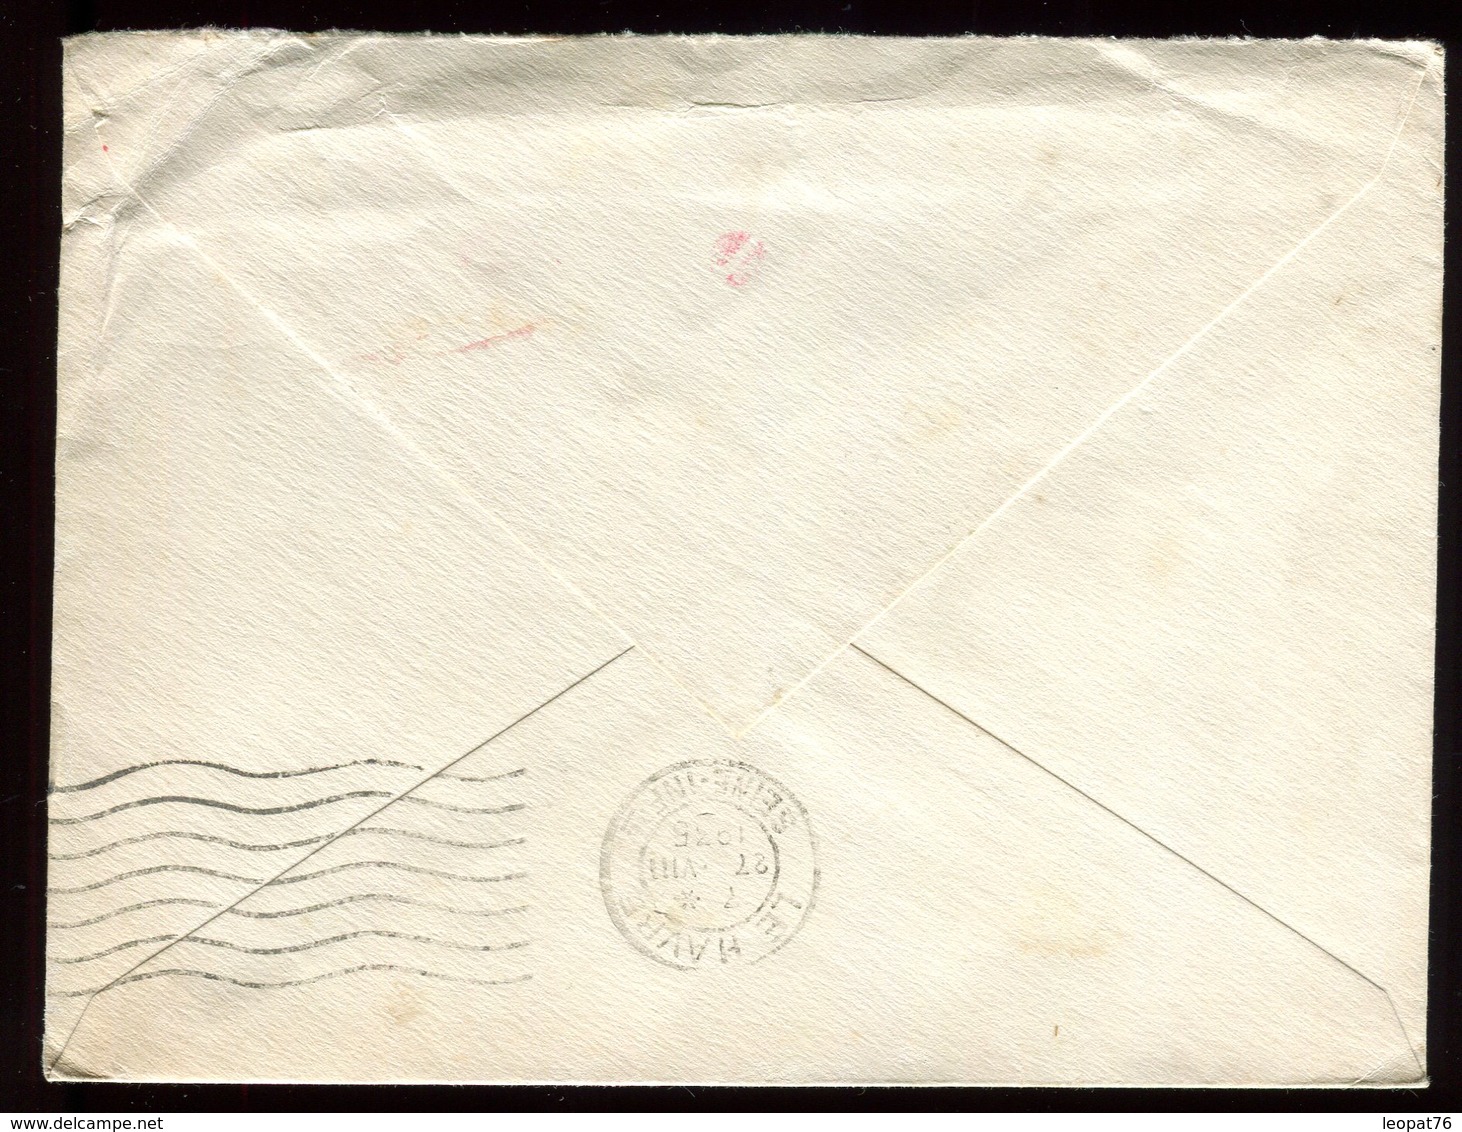 Canada - Enveloppe De Montréal Pour Le Havre E 1935 Via New York , Affranchissement Mécanique - Réf O61 - Briefe U. Dokumente